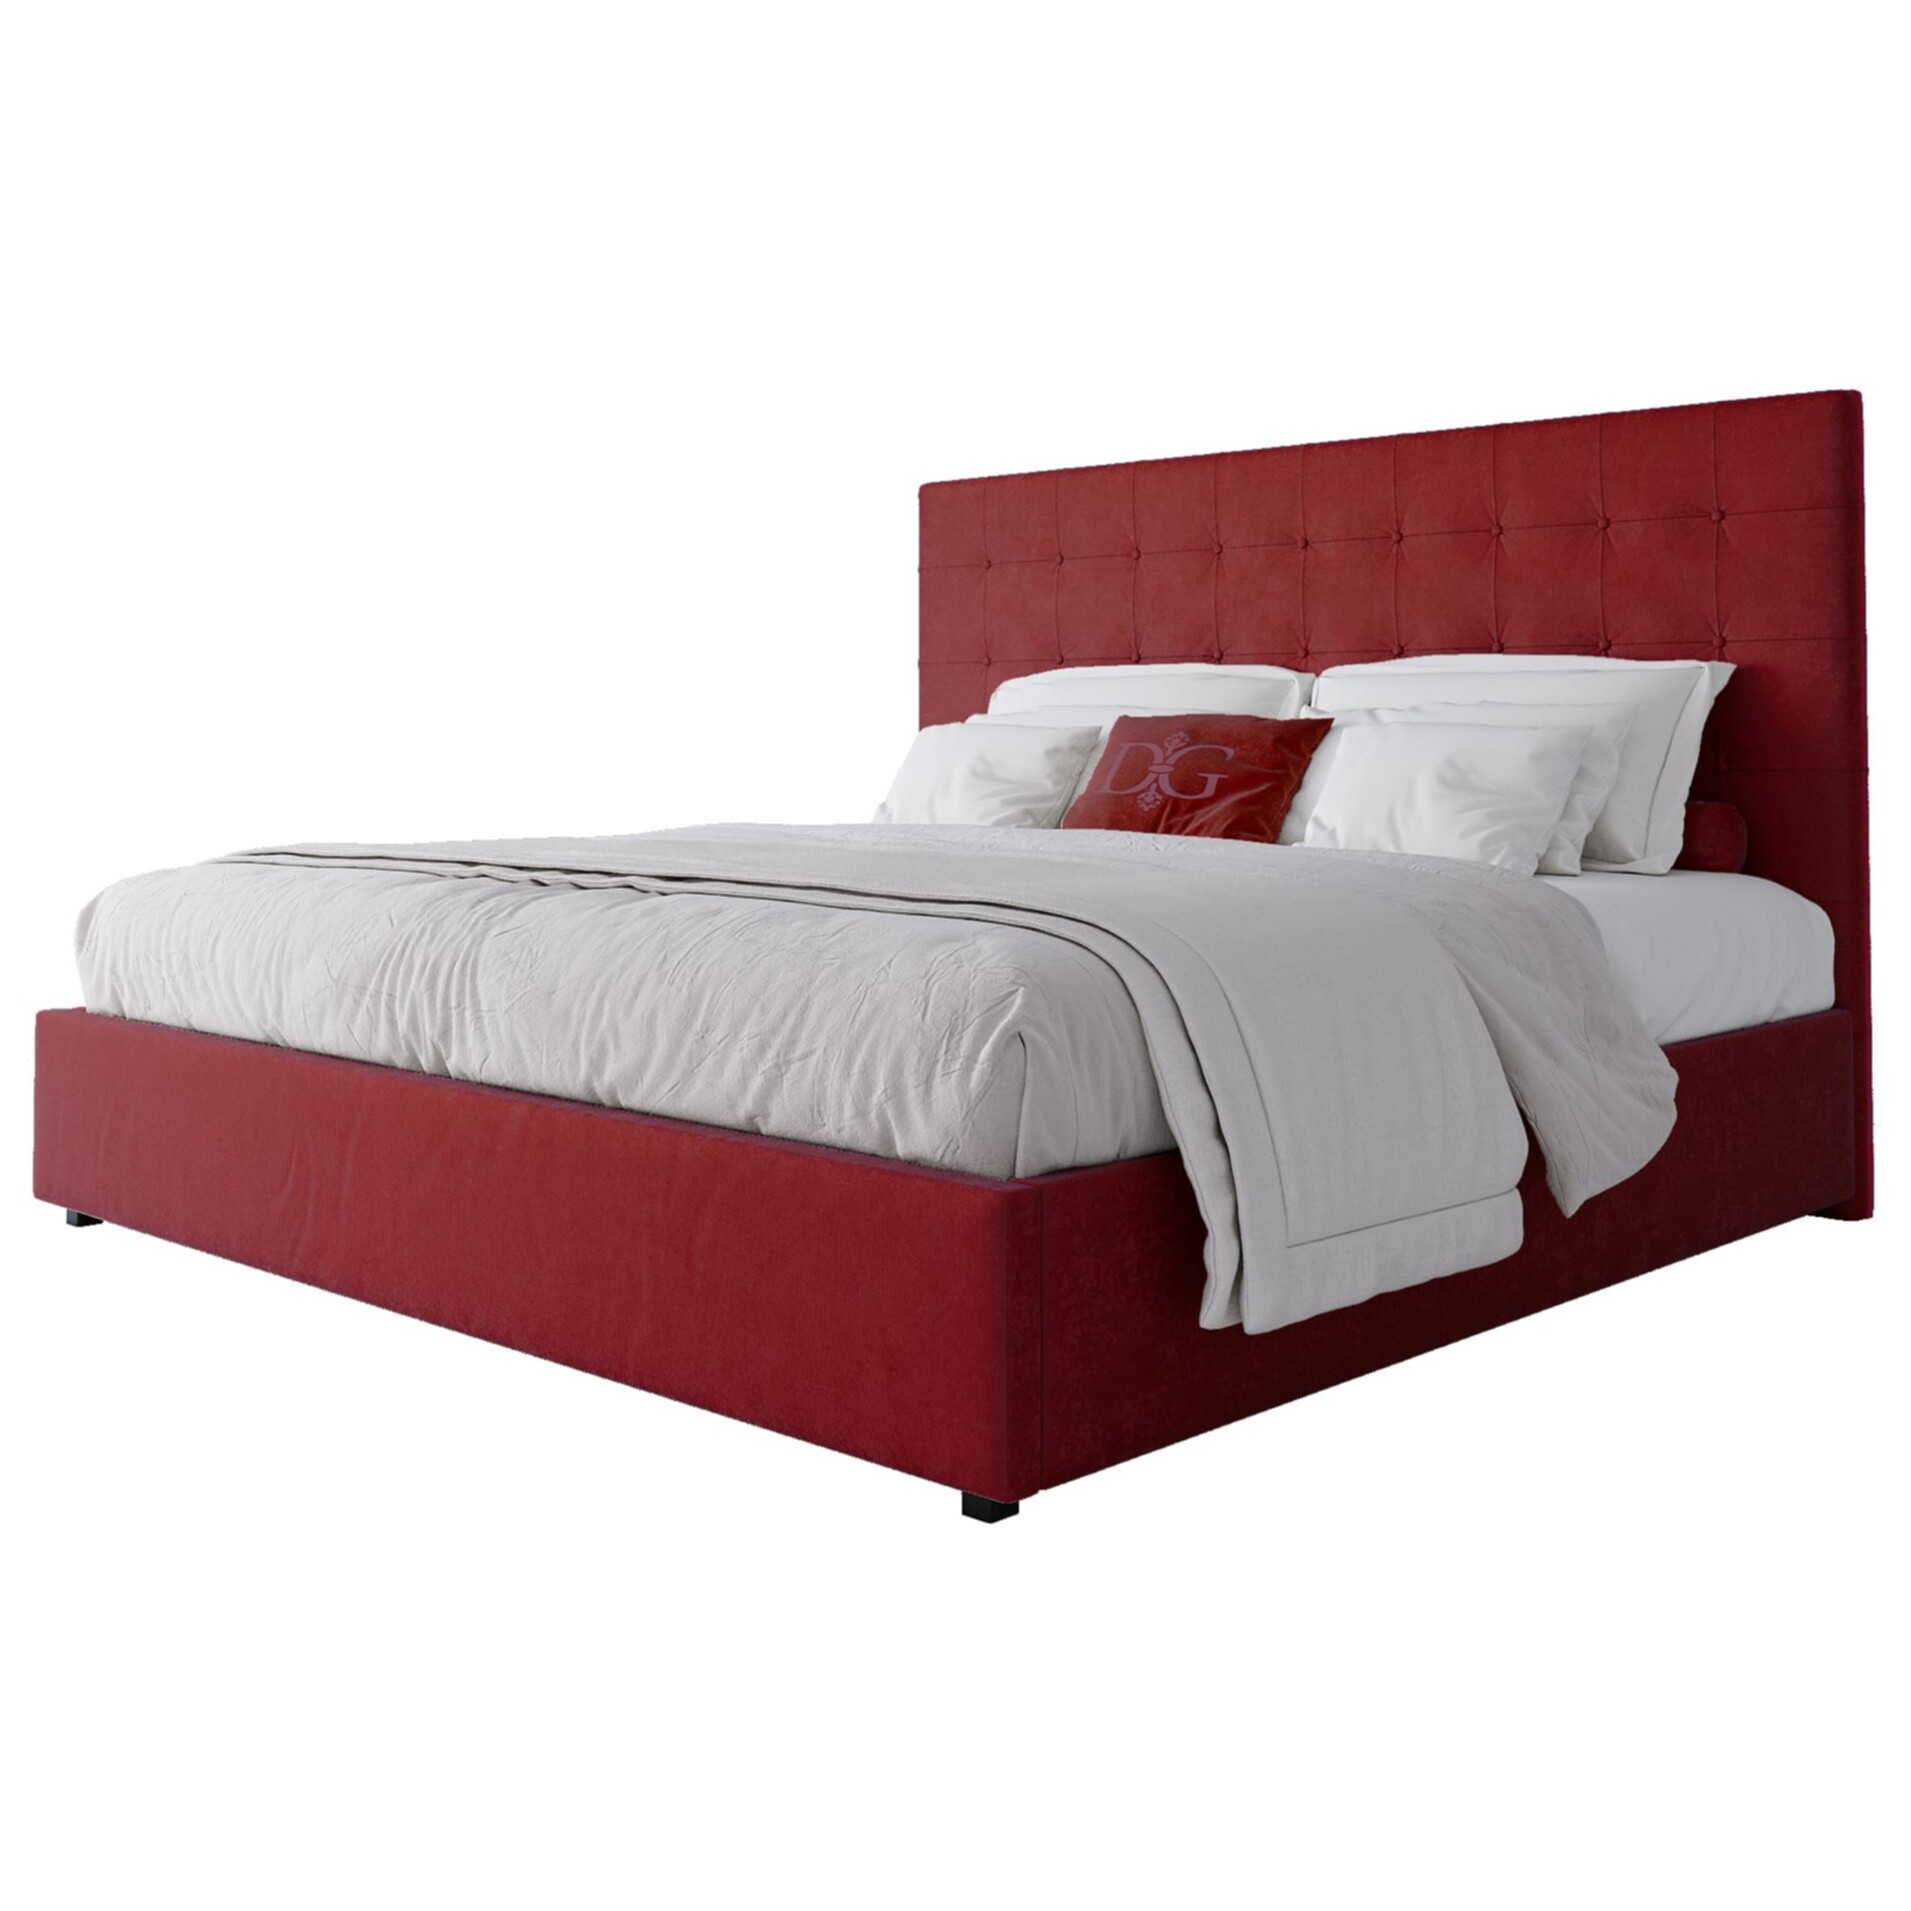 Кровать двуспальная с мягким изголовьем 180х200 см красная Royal Black